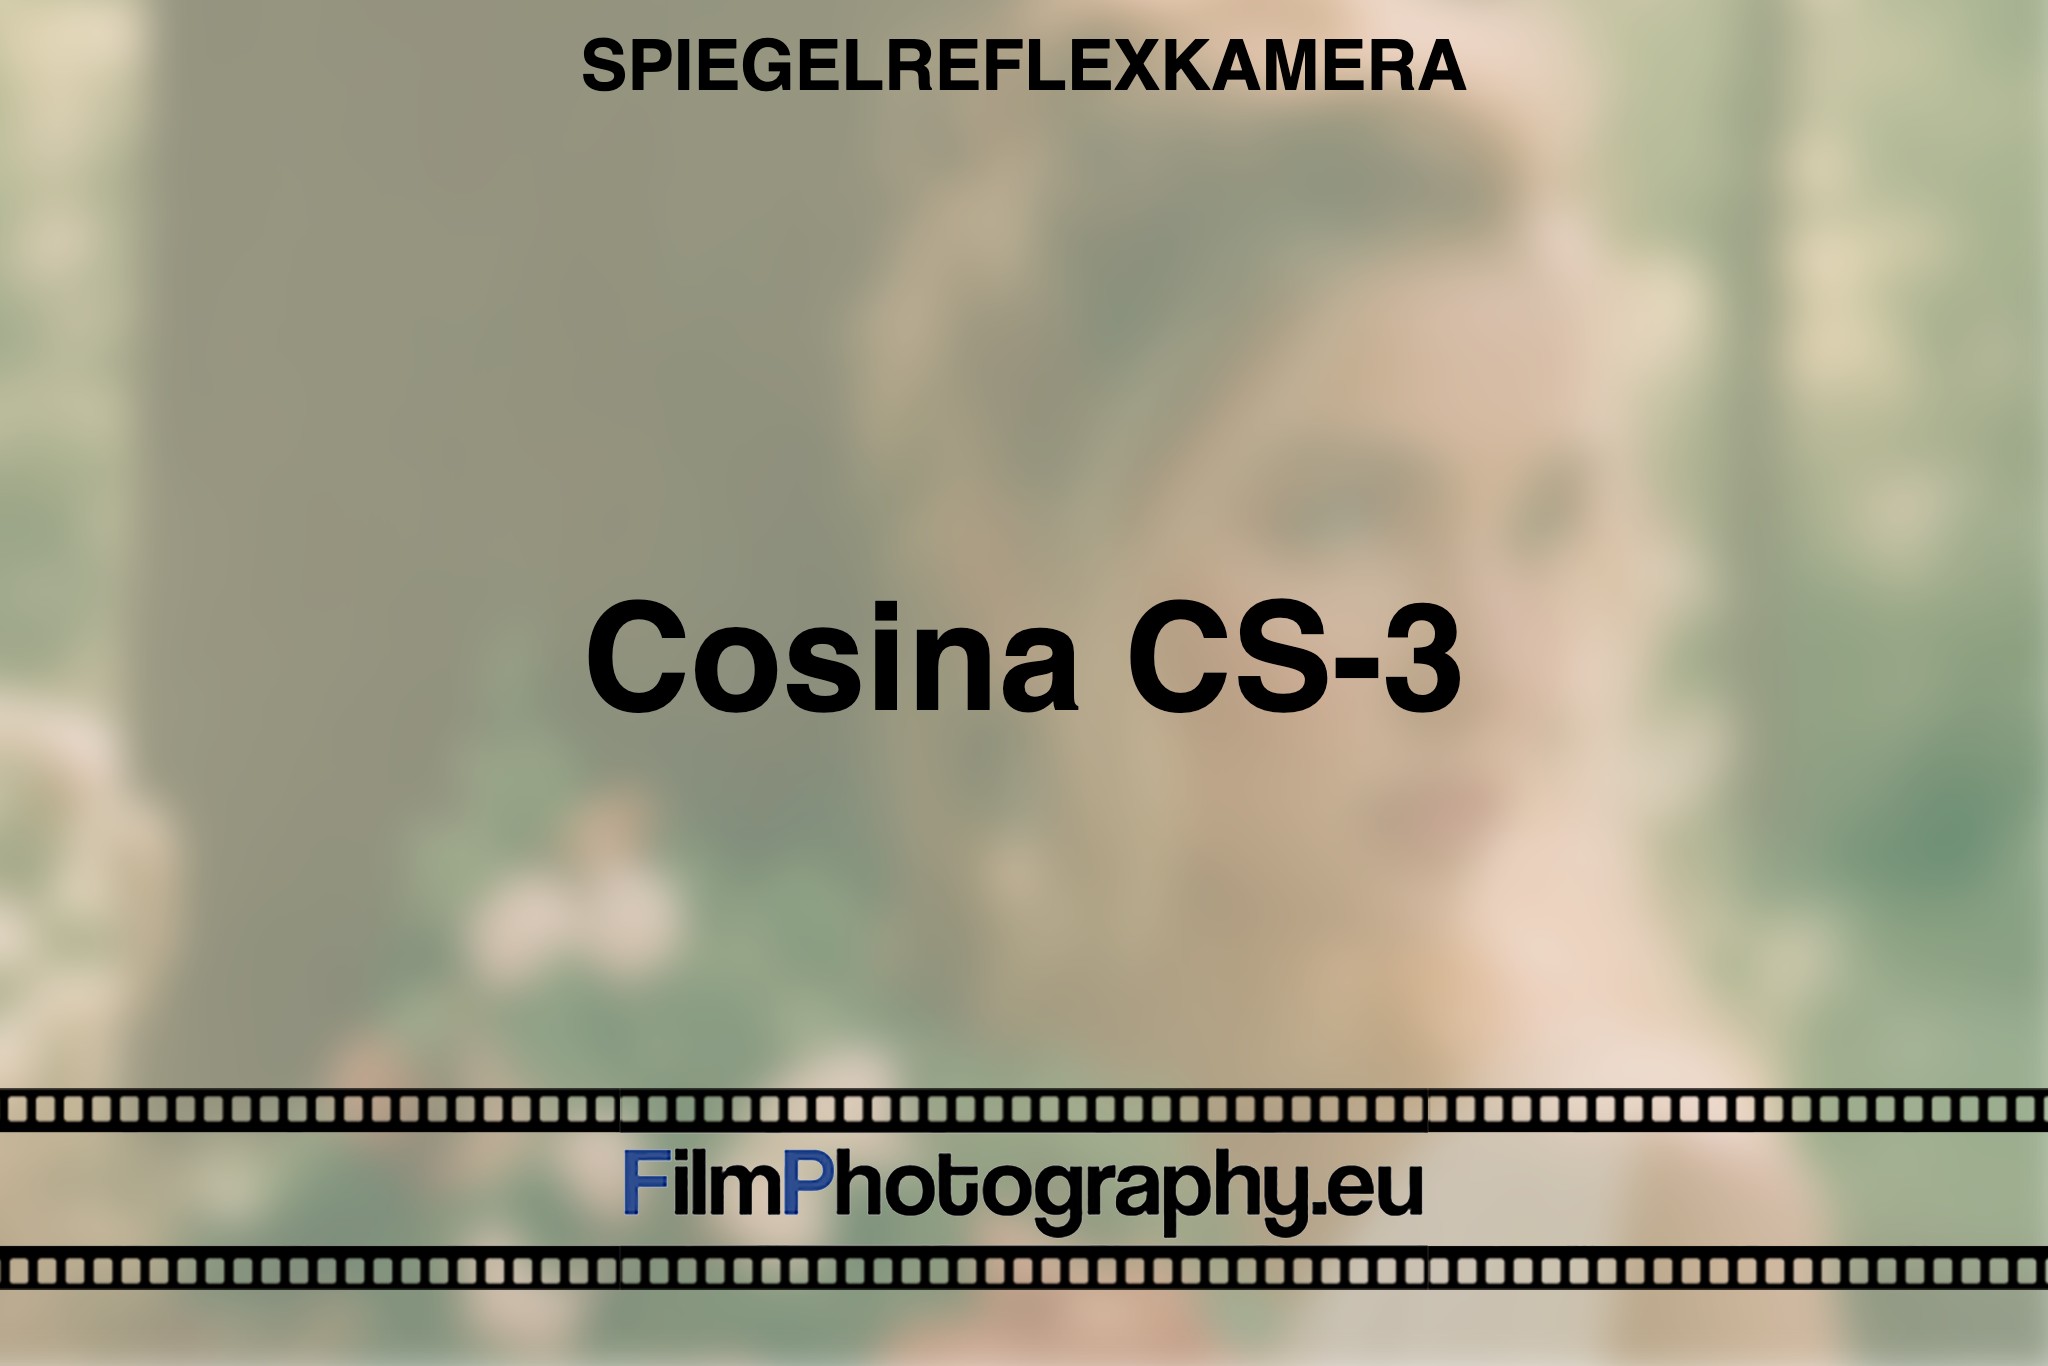 cosina-cs-3-spiegelreflexkamera-bnv